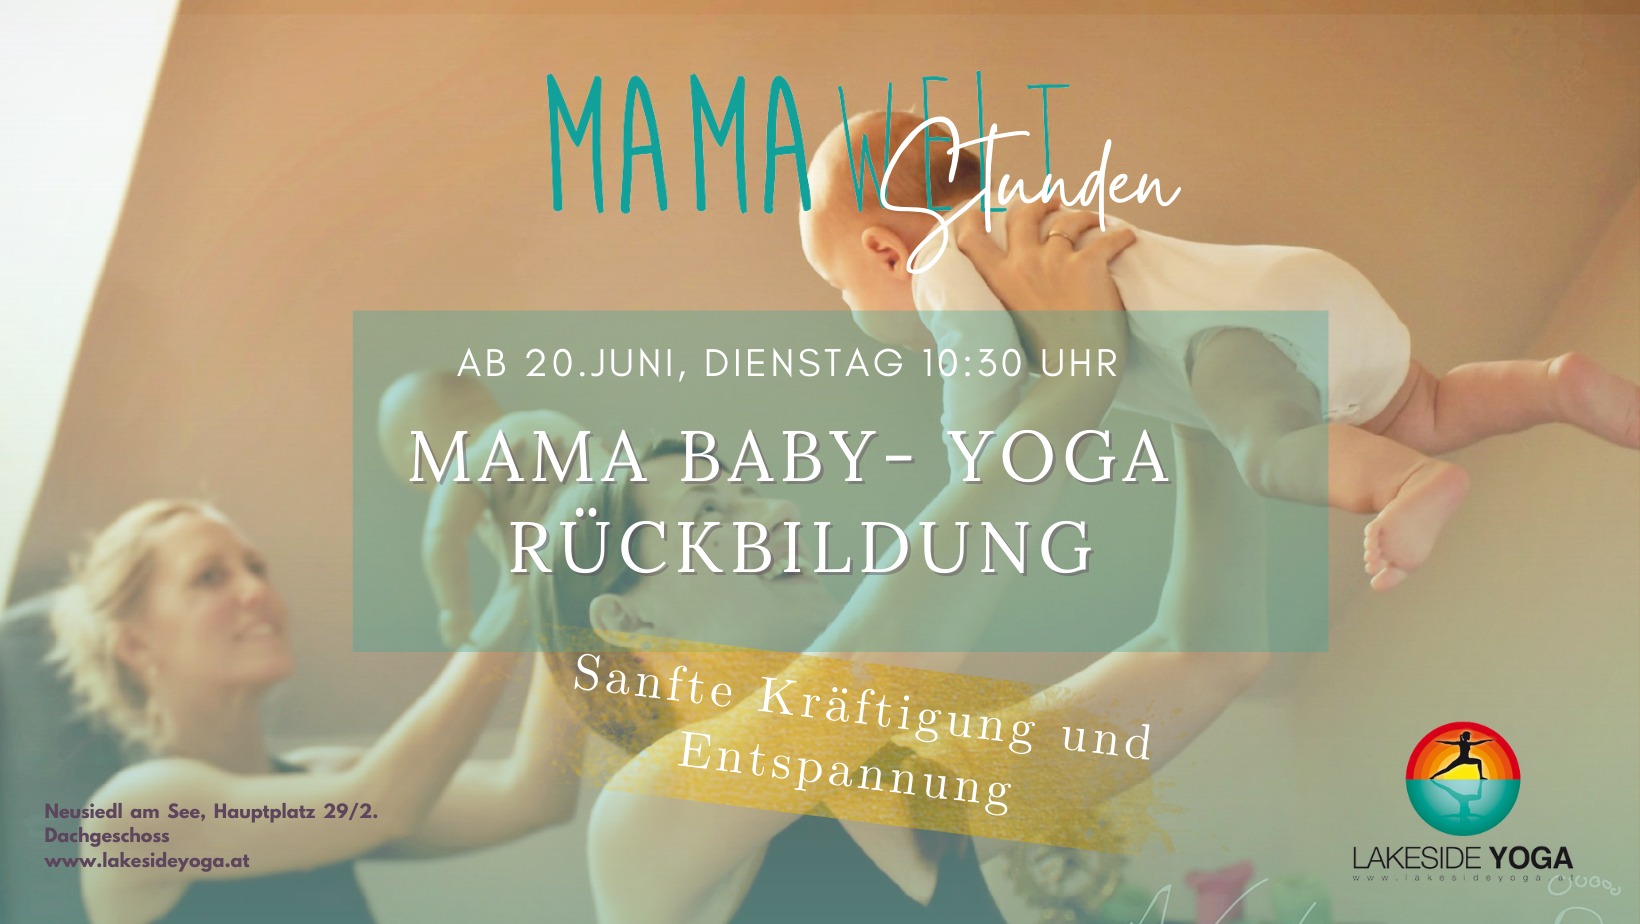 Mama-Baby Yoga-Rückbildung Kurs ab 20.6 Dienstag um 10:30